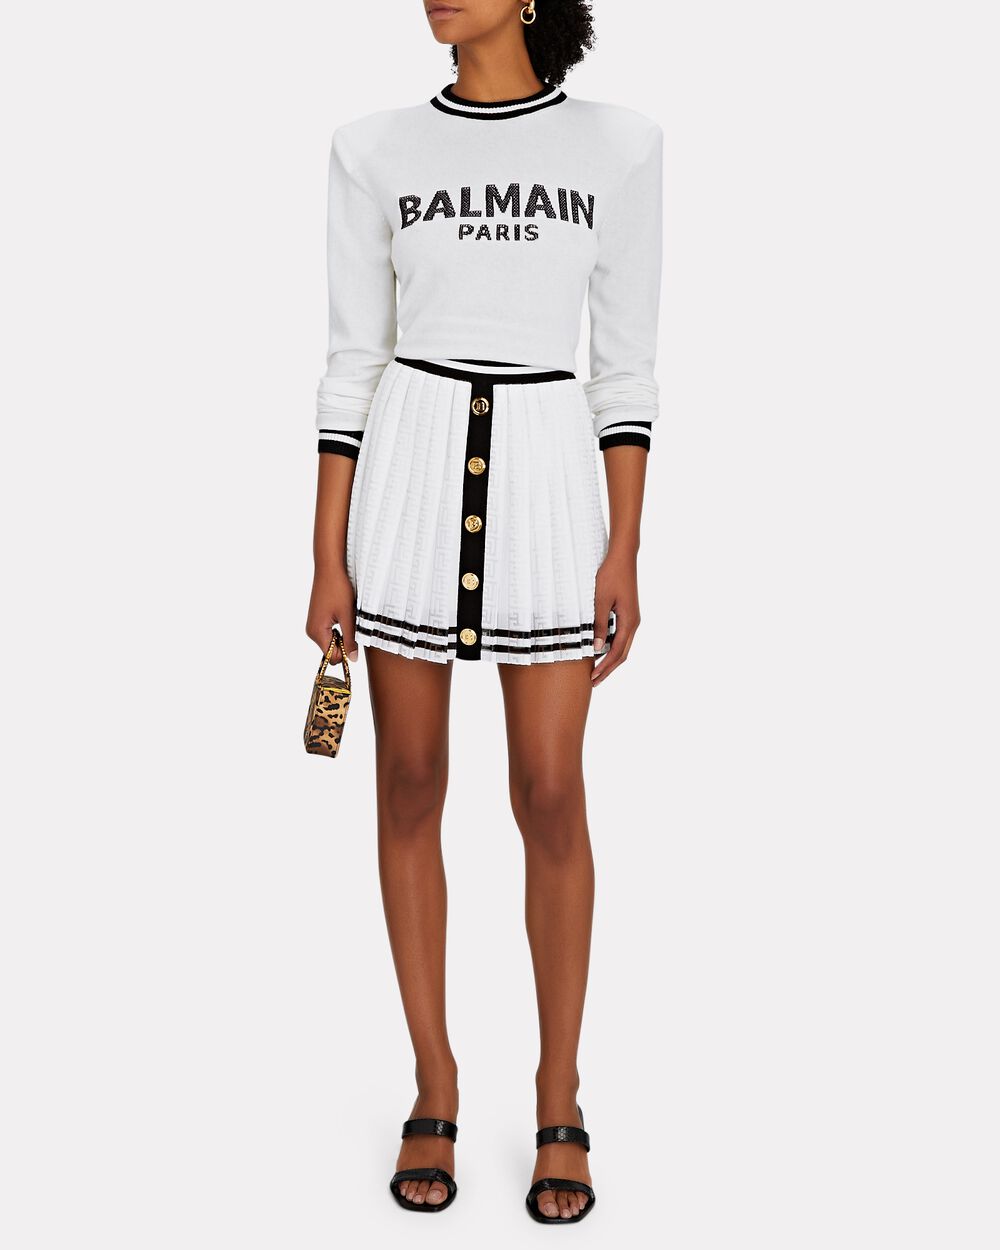 Balmain Paris Mini Monogram Jacquard Track Jacket